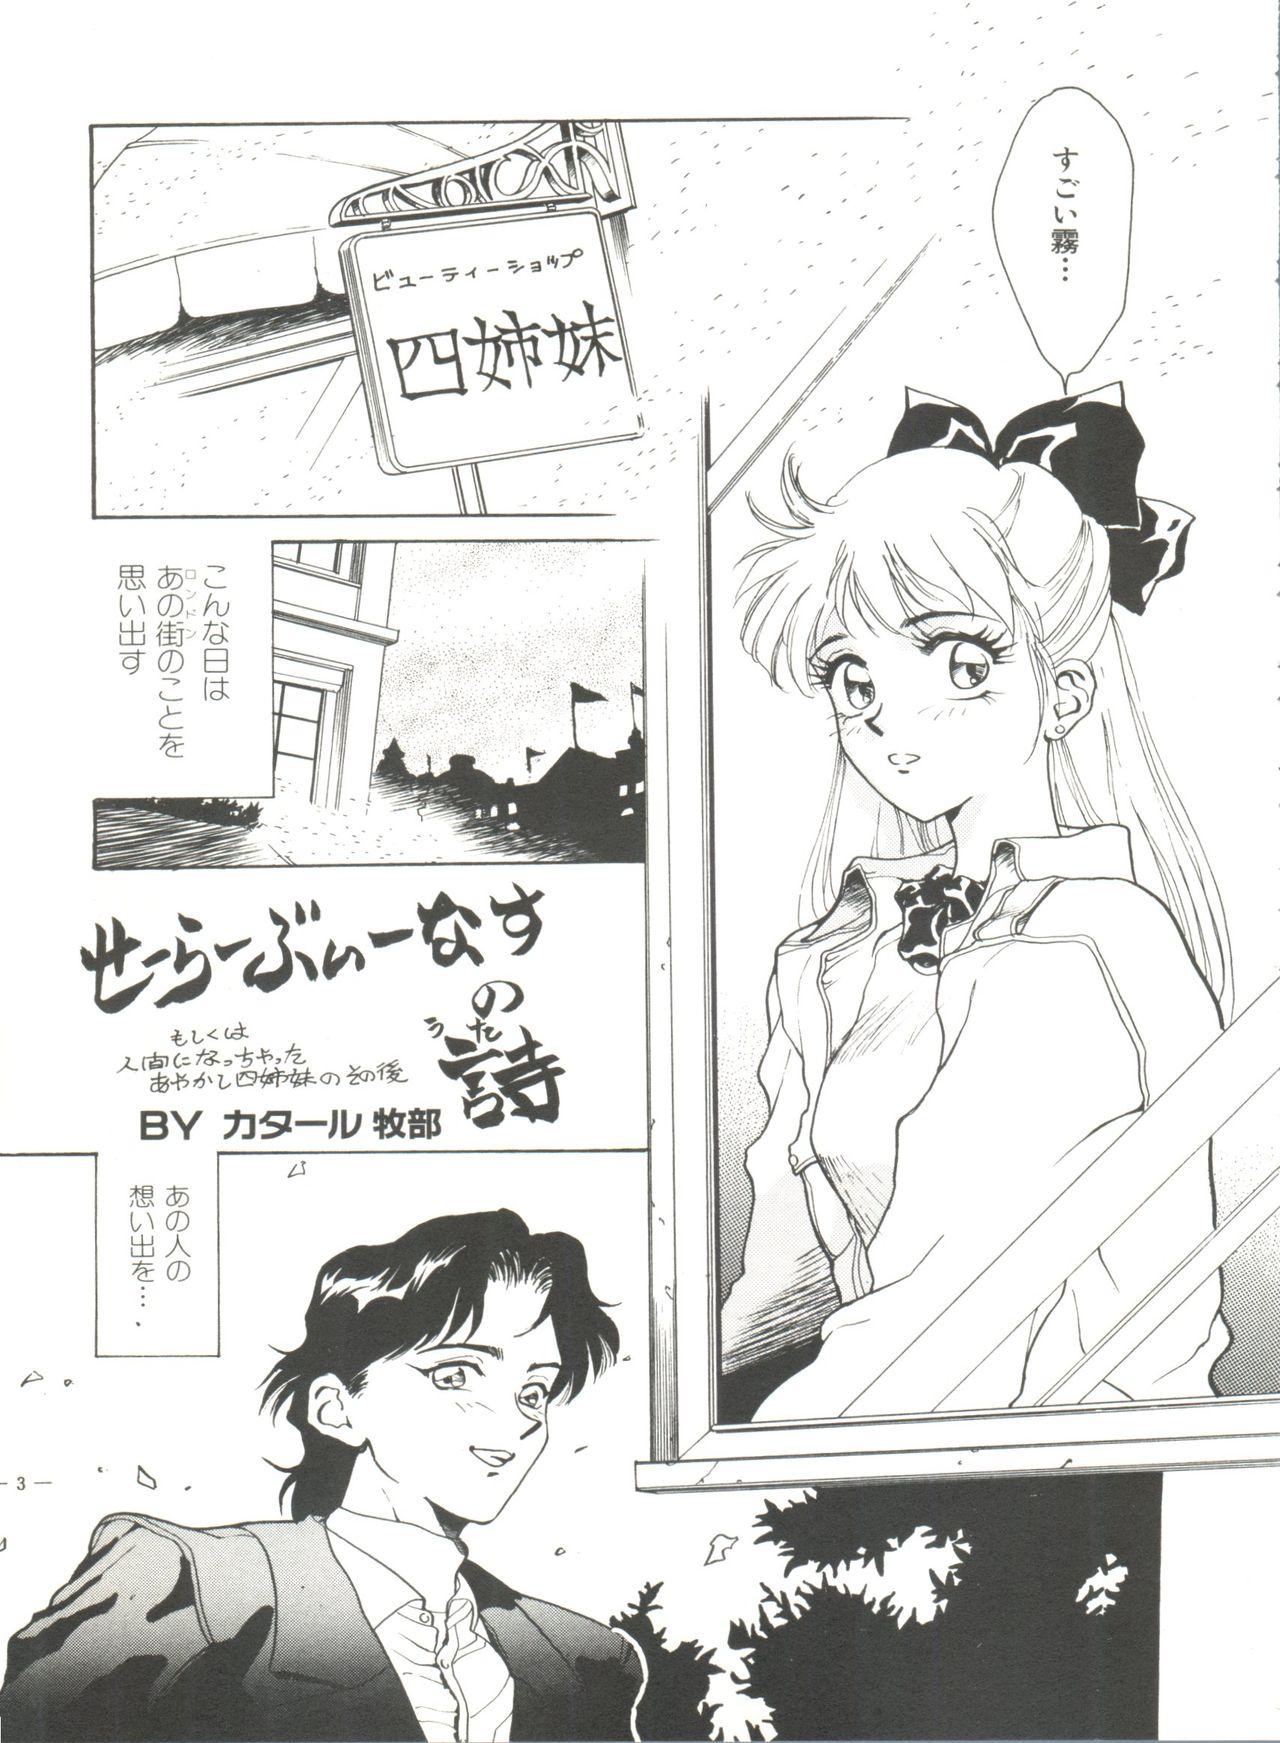 Bishoujo Doujinshi Anthology 2 - Moon Paradise 1 Tsuki no Rakuen 31